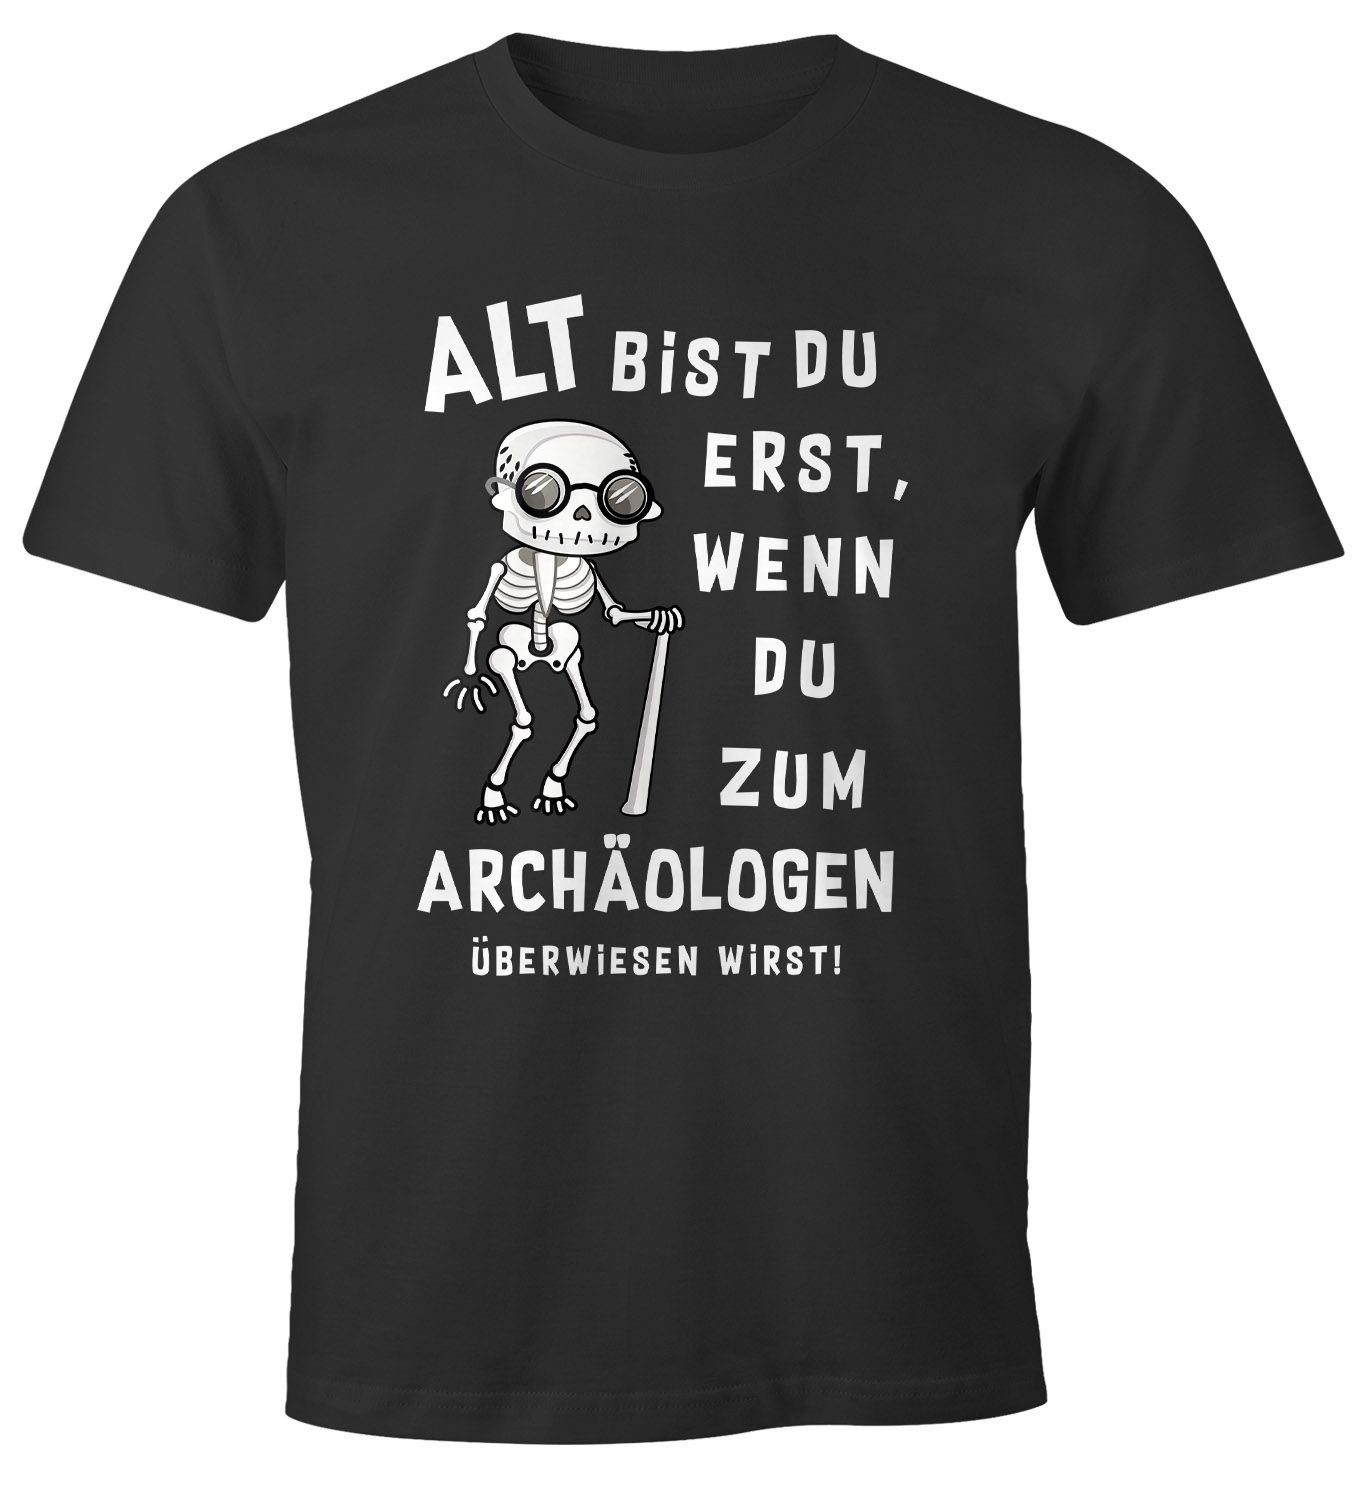 MoonWorks Print-Shirt Herren T-Shirt Geburtstag Geschenk Alt bist du erst wenn du zum Archäologen... lustiger Spruch Skelett MoonWorks® mit Print